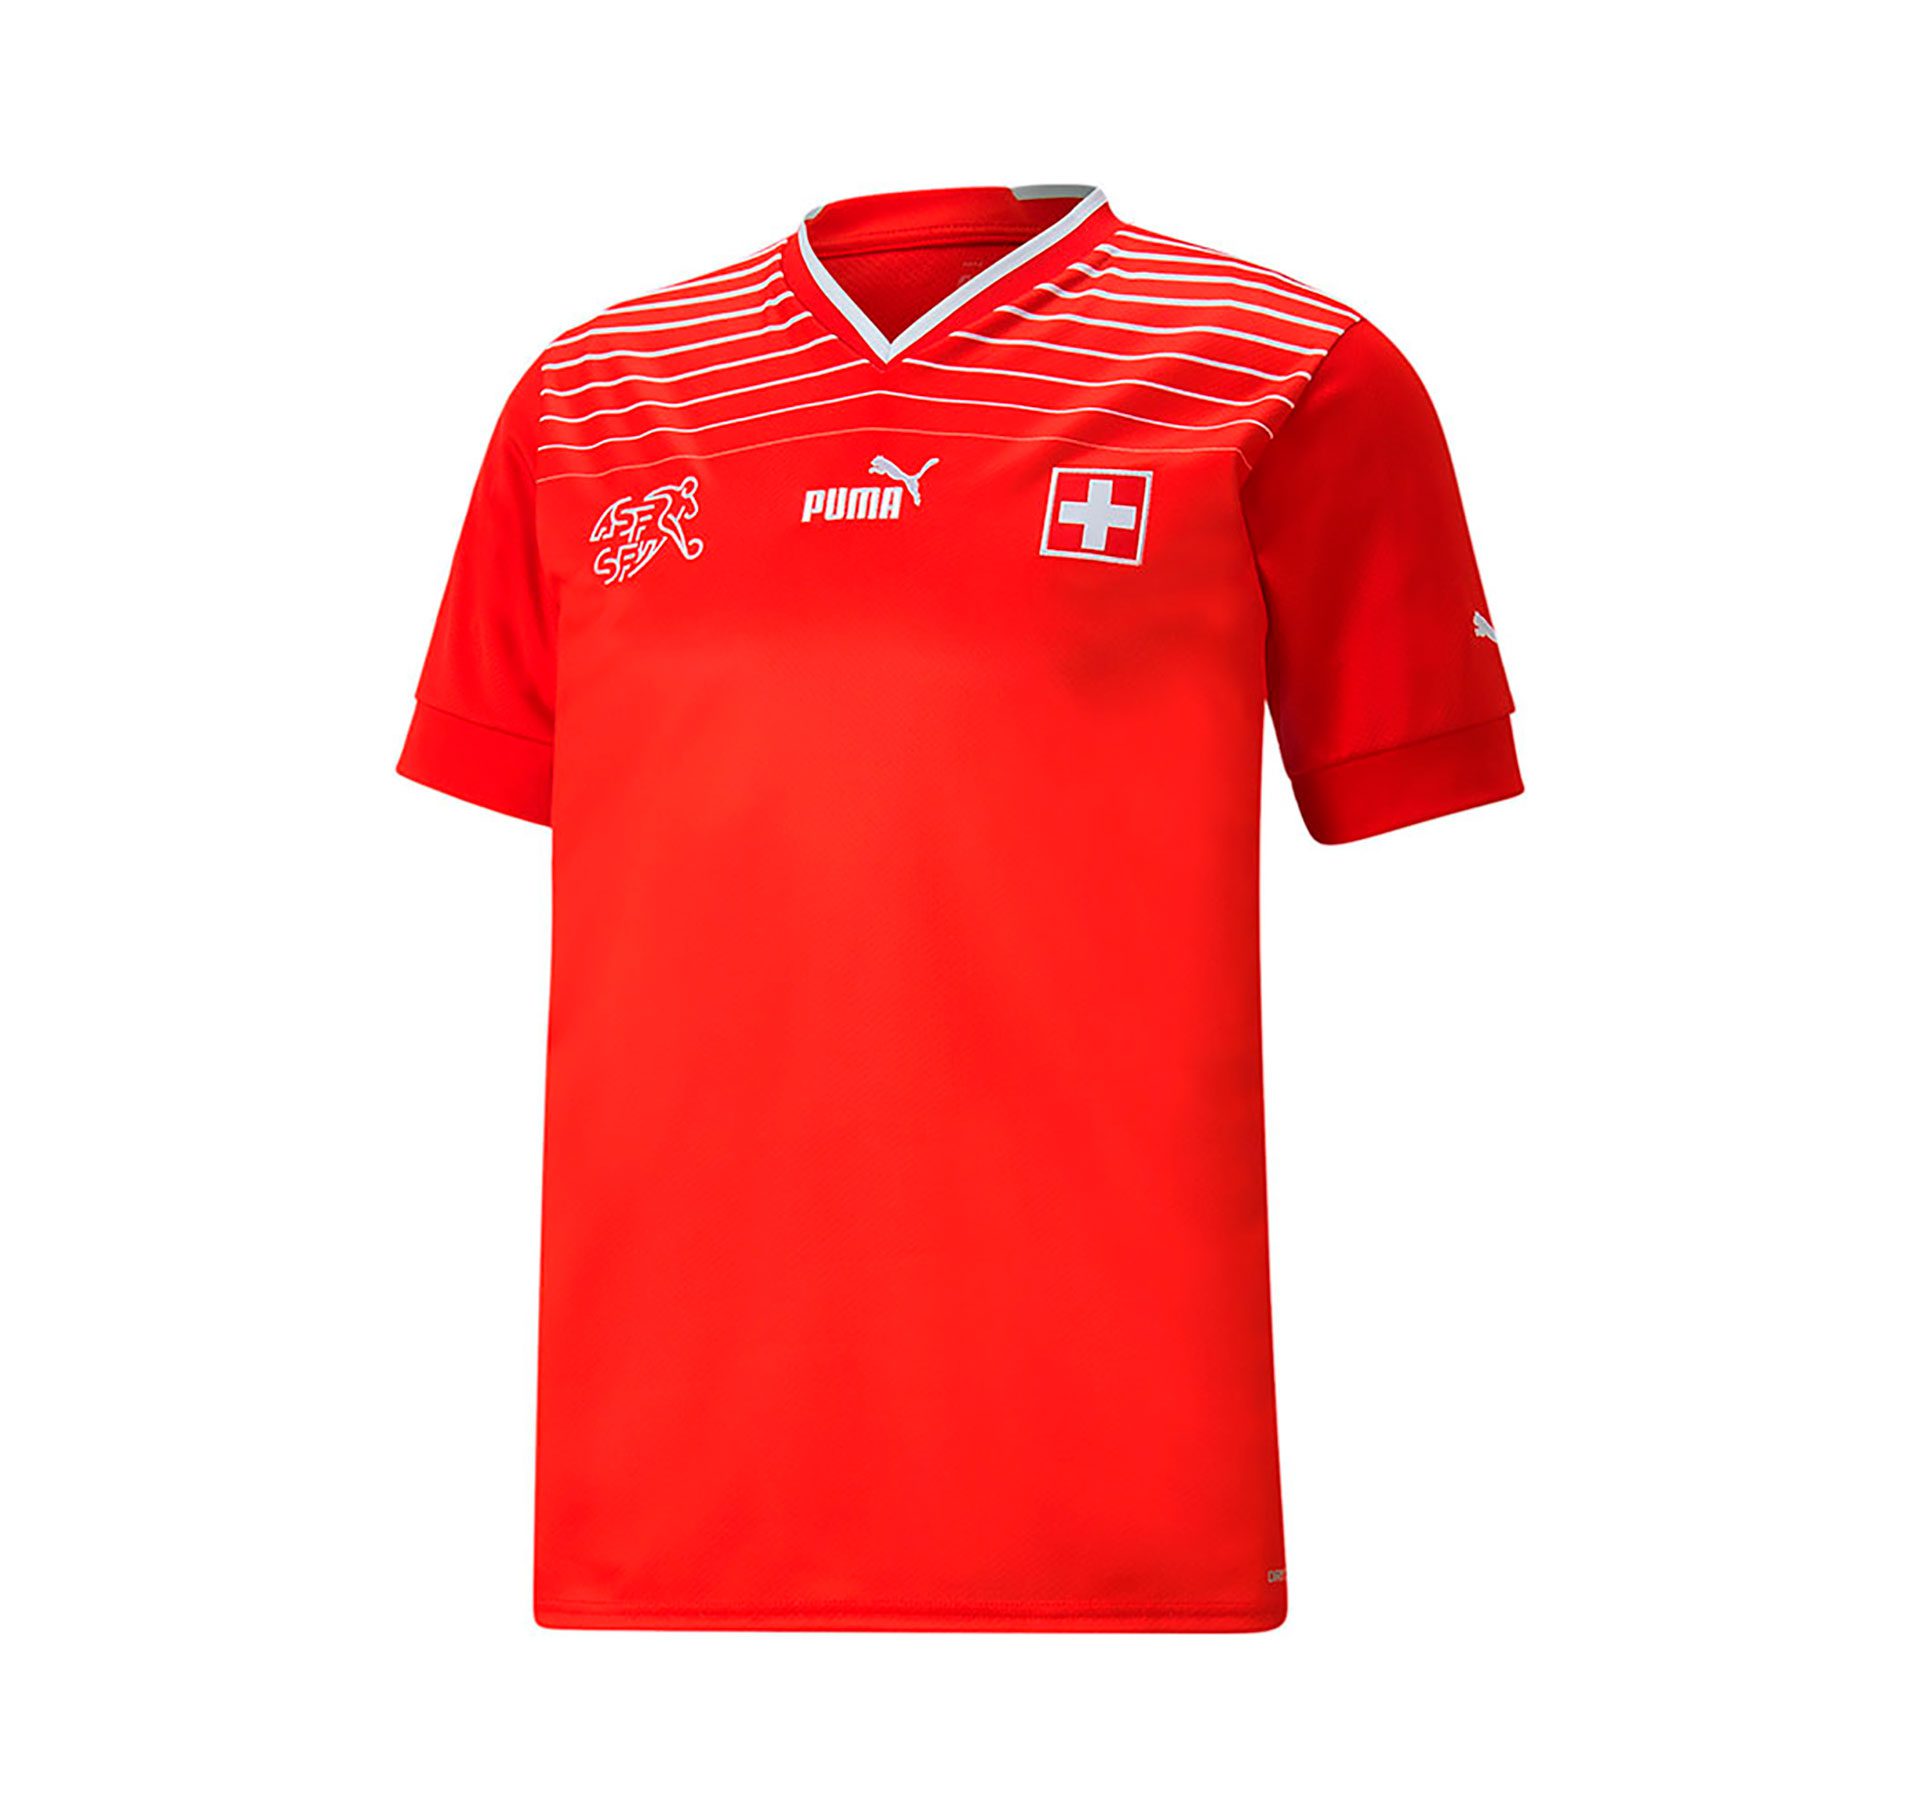 switzerland national team shirt